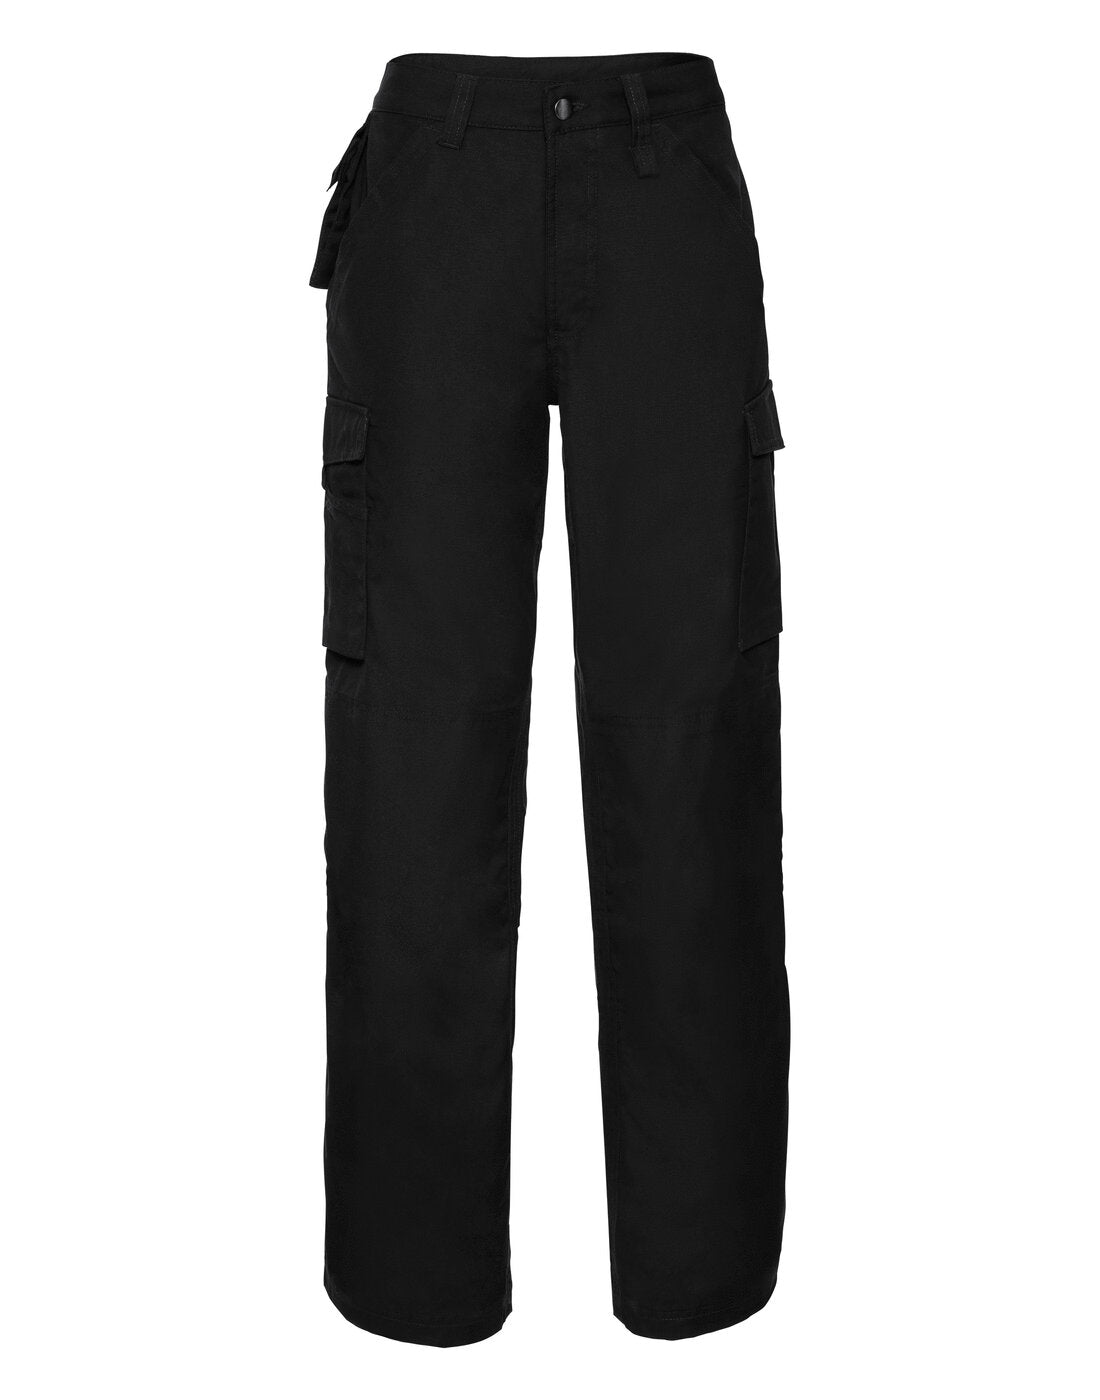 Russell Heavy Duty Workwear Trousers - Black